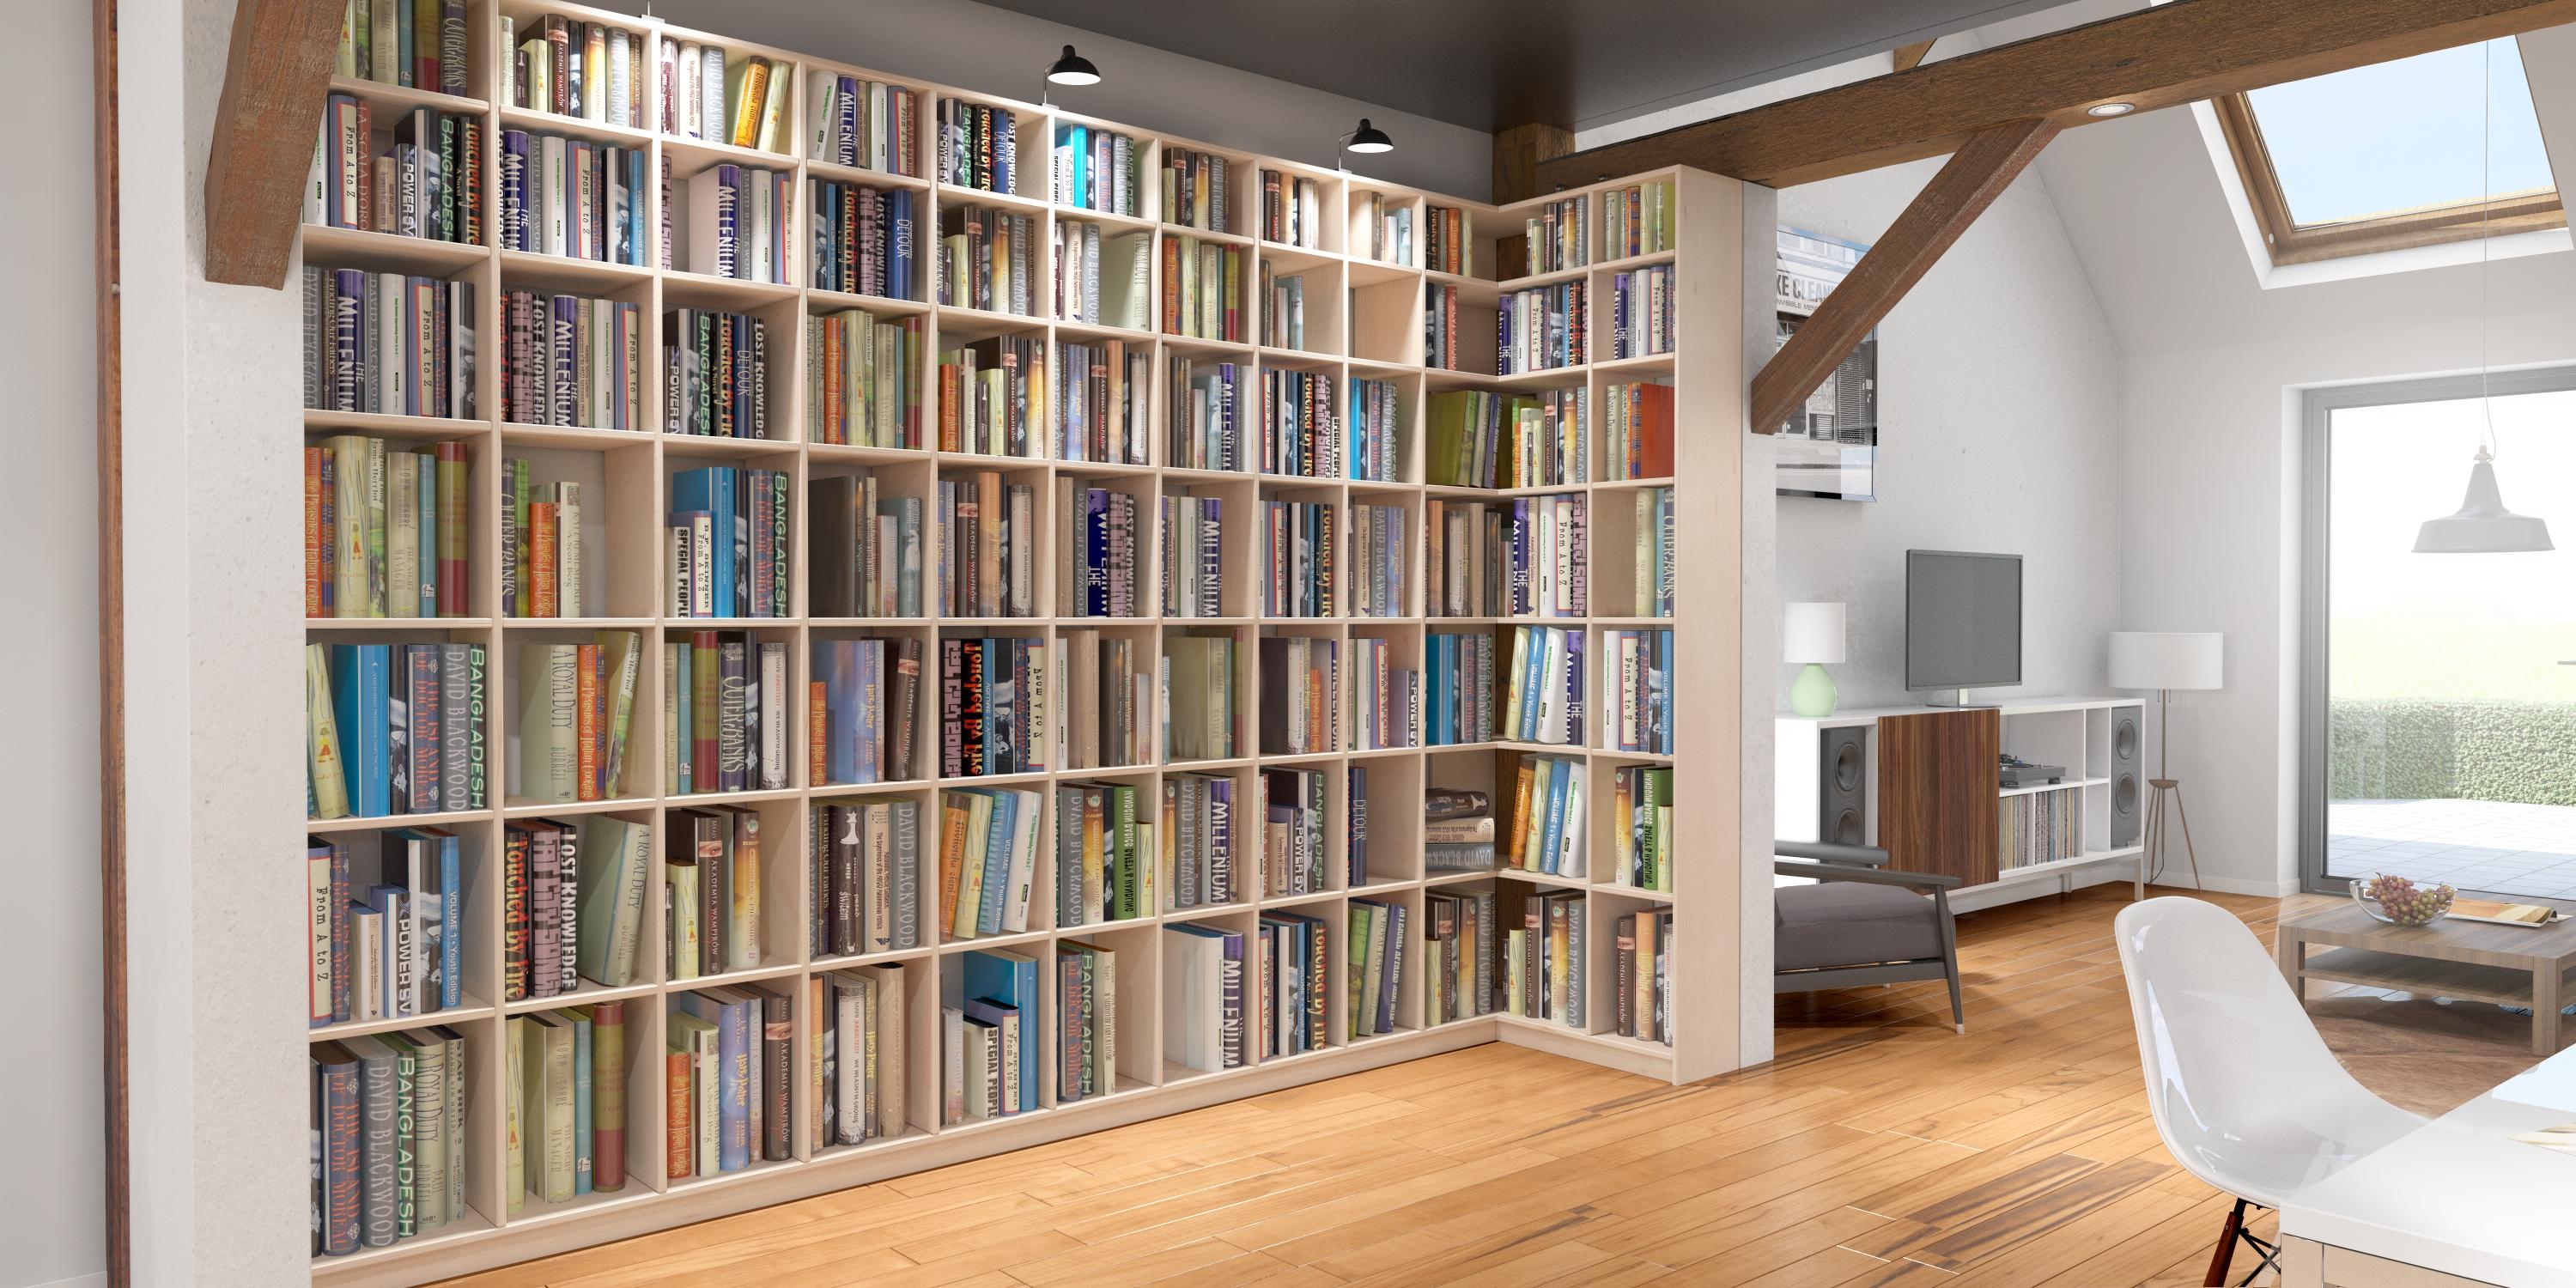 Bibliothek aus Buche mit integrierter Ecklösung #bibliothek #regal #bücherregal #eckregal ©Pickawood